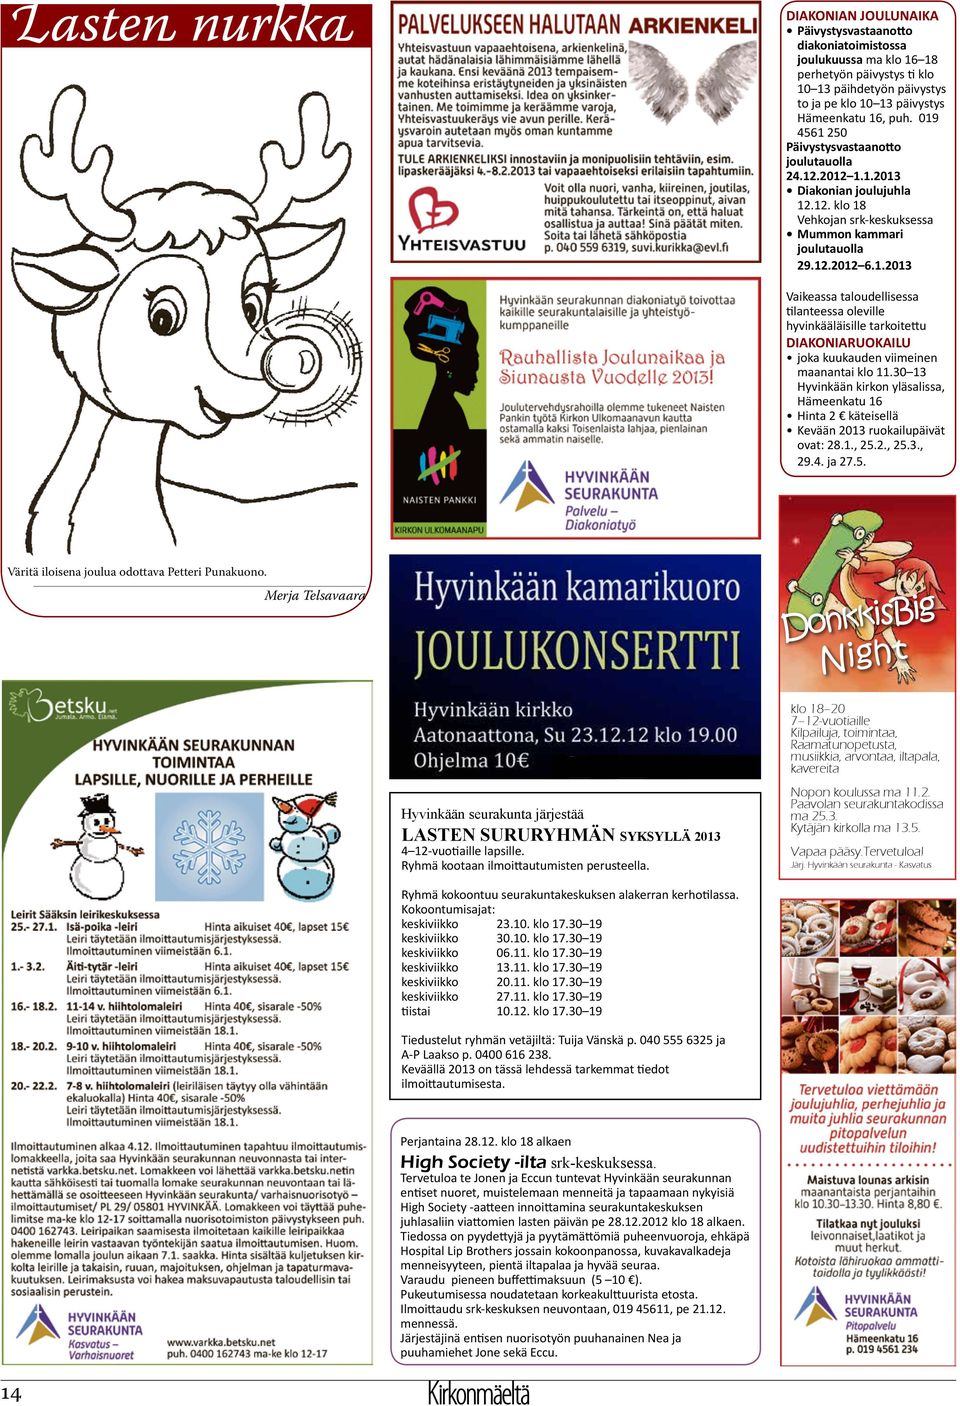 30 13 Hyvinkään kirkon yläsalissa, Hämeenkatu 16 Hinta 2 käteisellä Kevään 2013 ruokailupäivät ovat: 28.1., 25.2., 25.3., 29.4. ja 27.5. Väritä iloisena joulua odottava Petteri Punakuono.